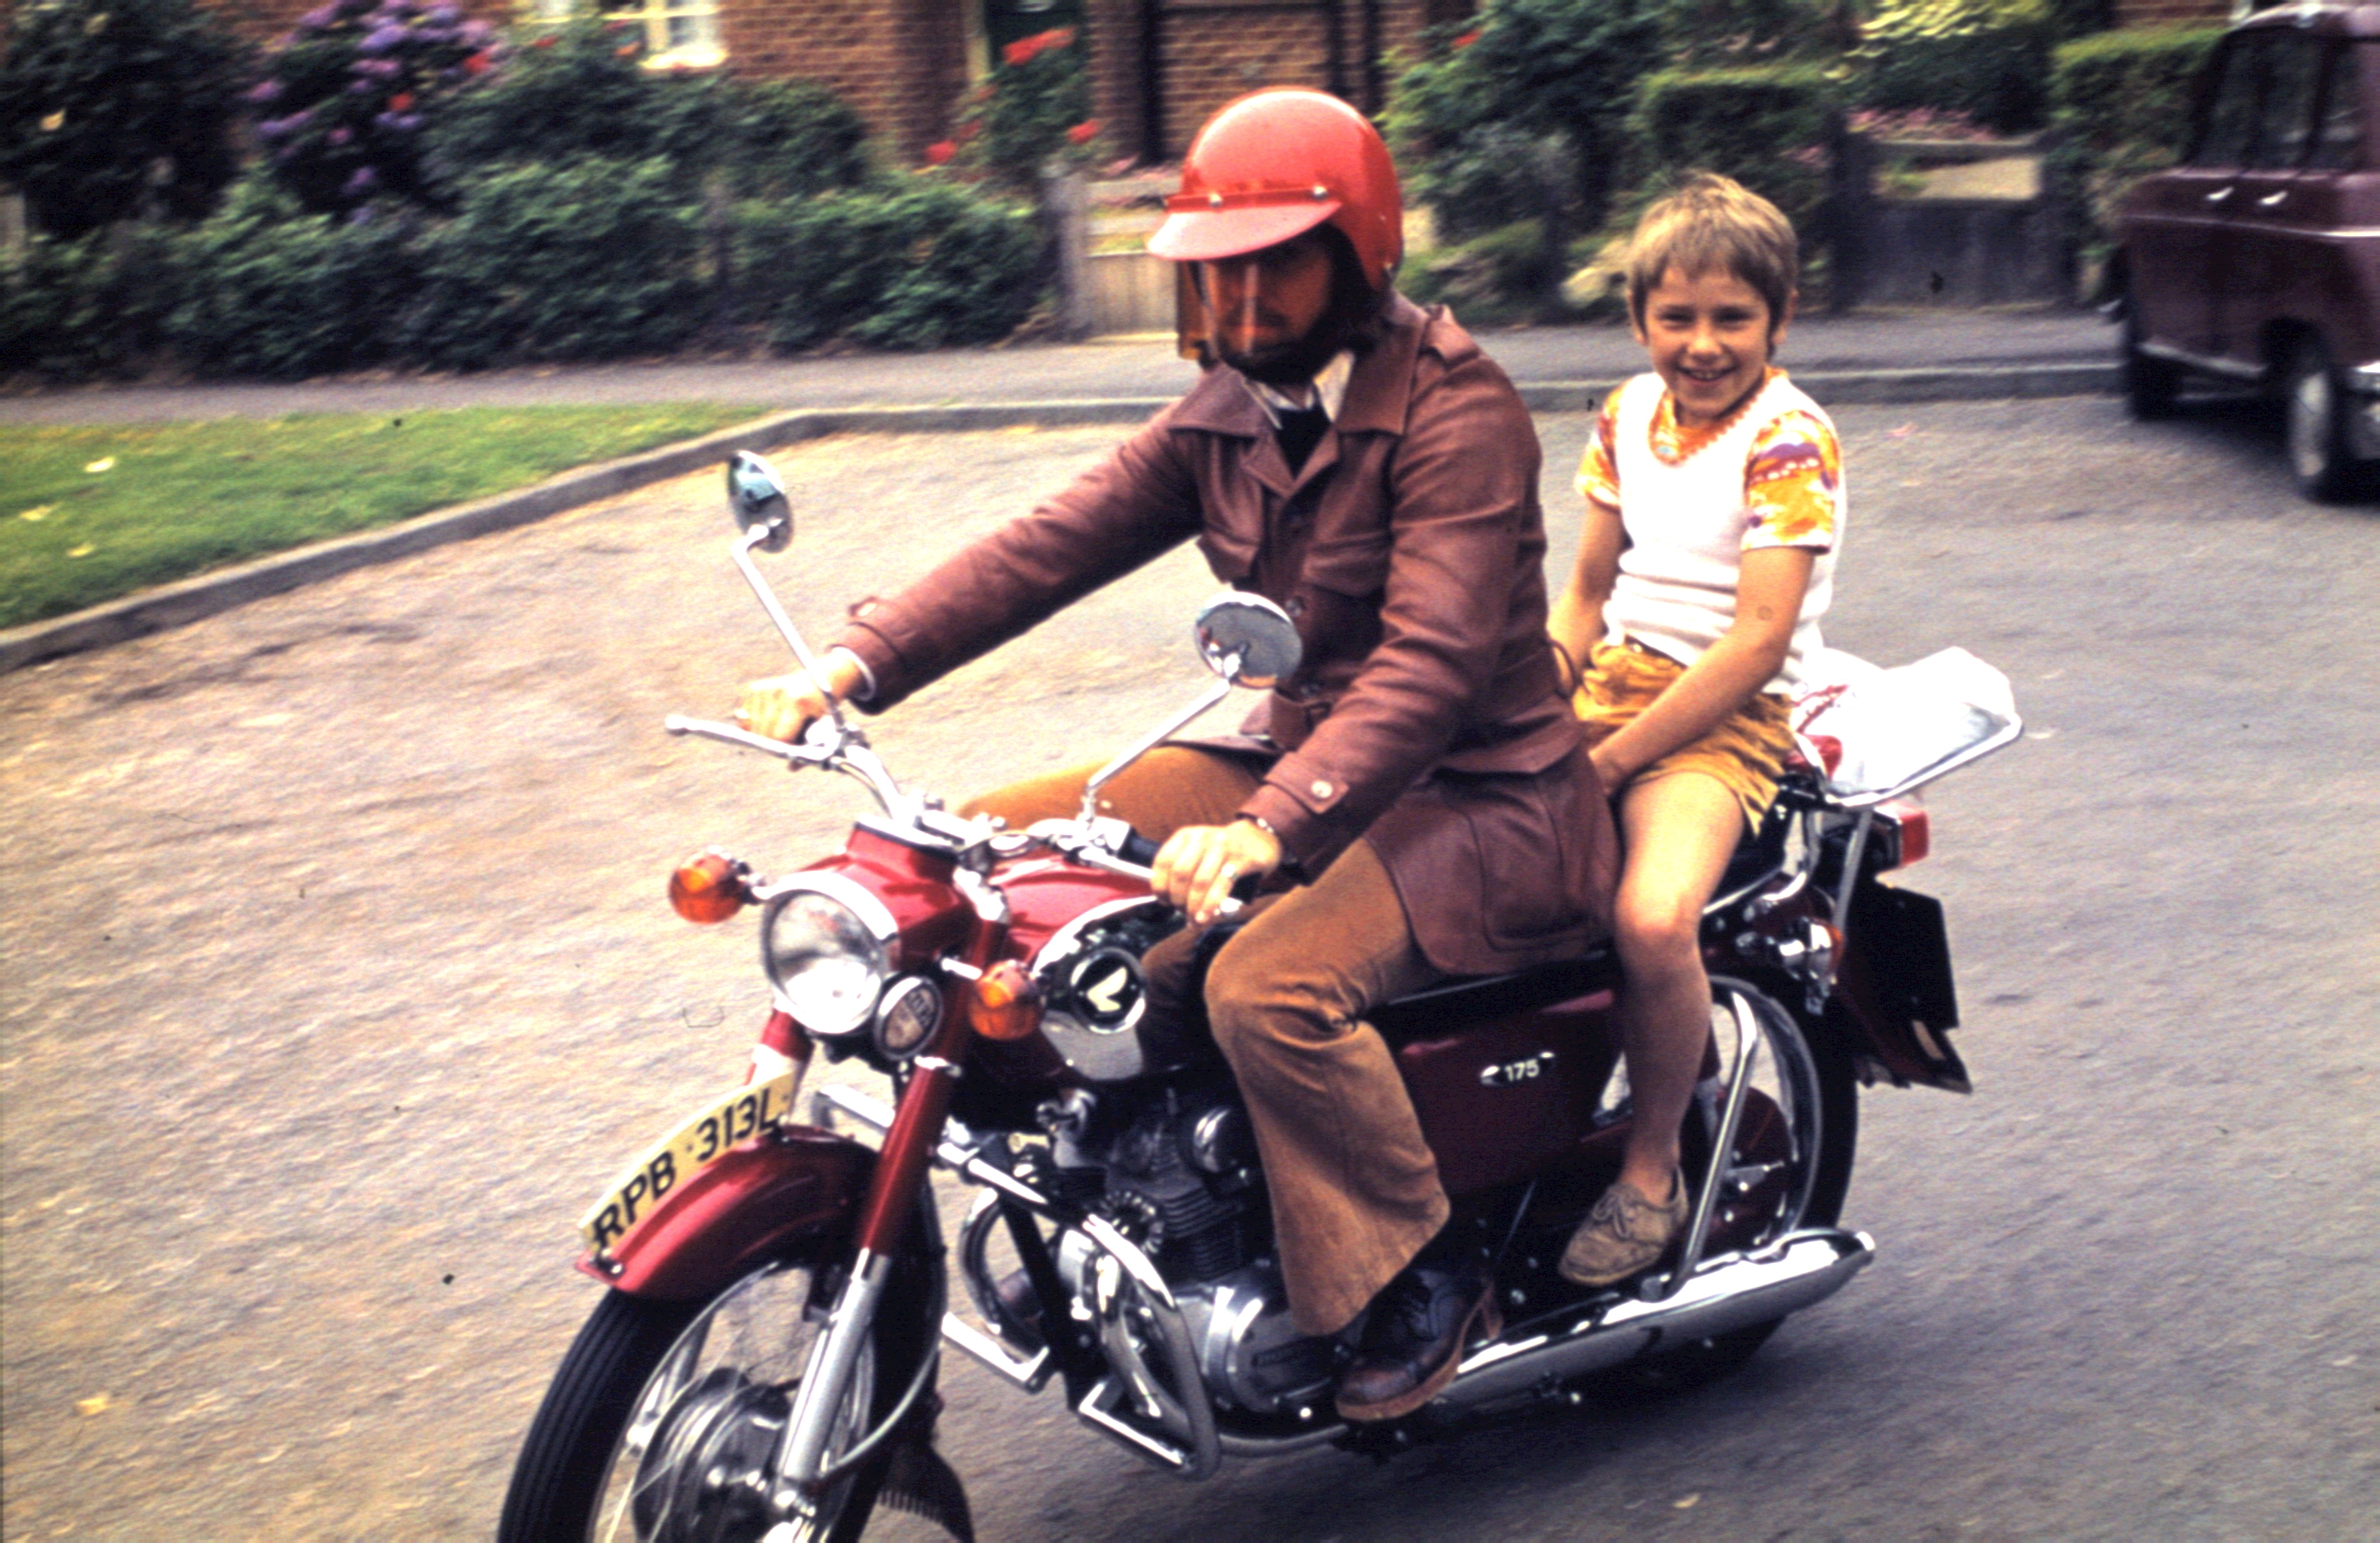 Uwe 1973 auf Honda CB175